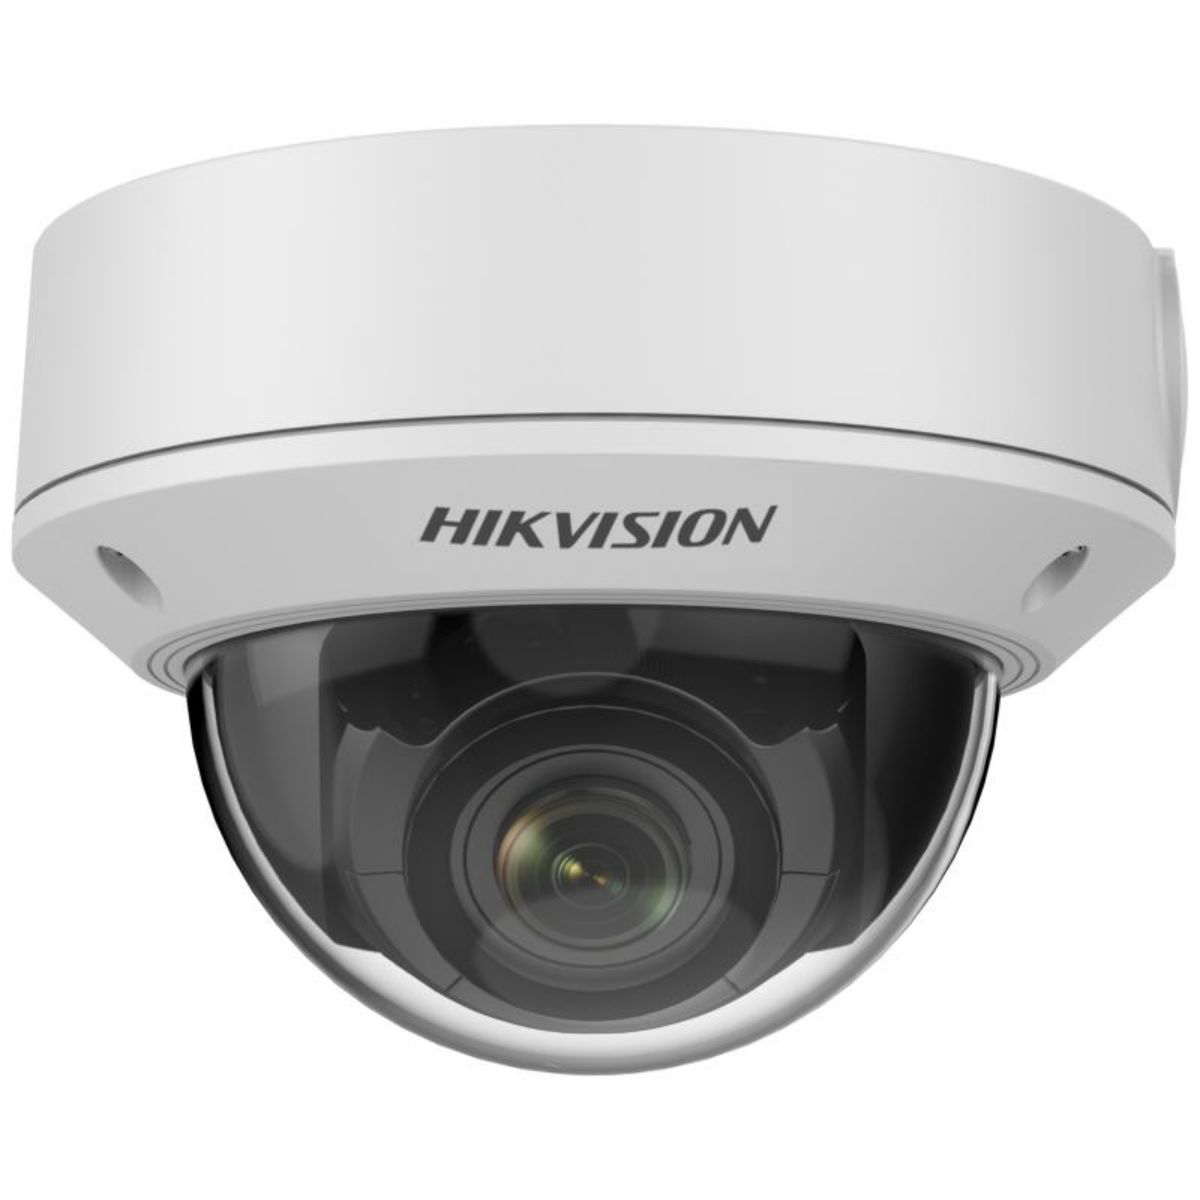 Hikvision 4 MP Varifocal Dome Network Camera – DS-2CD1743G0-IZ